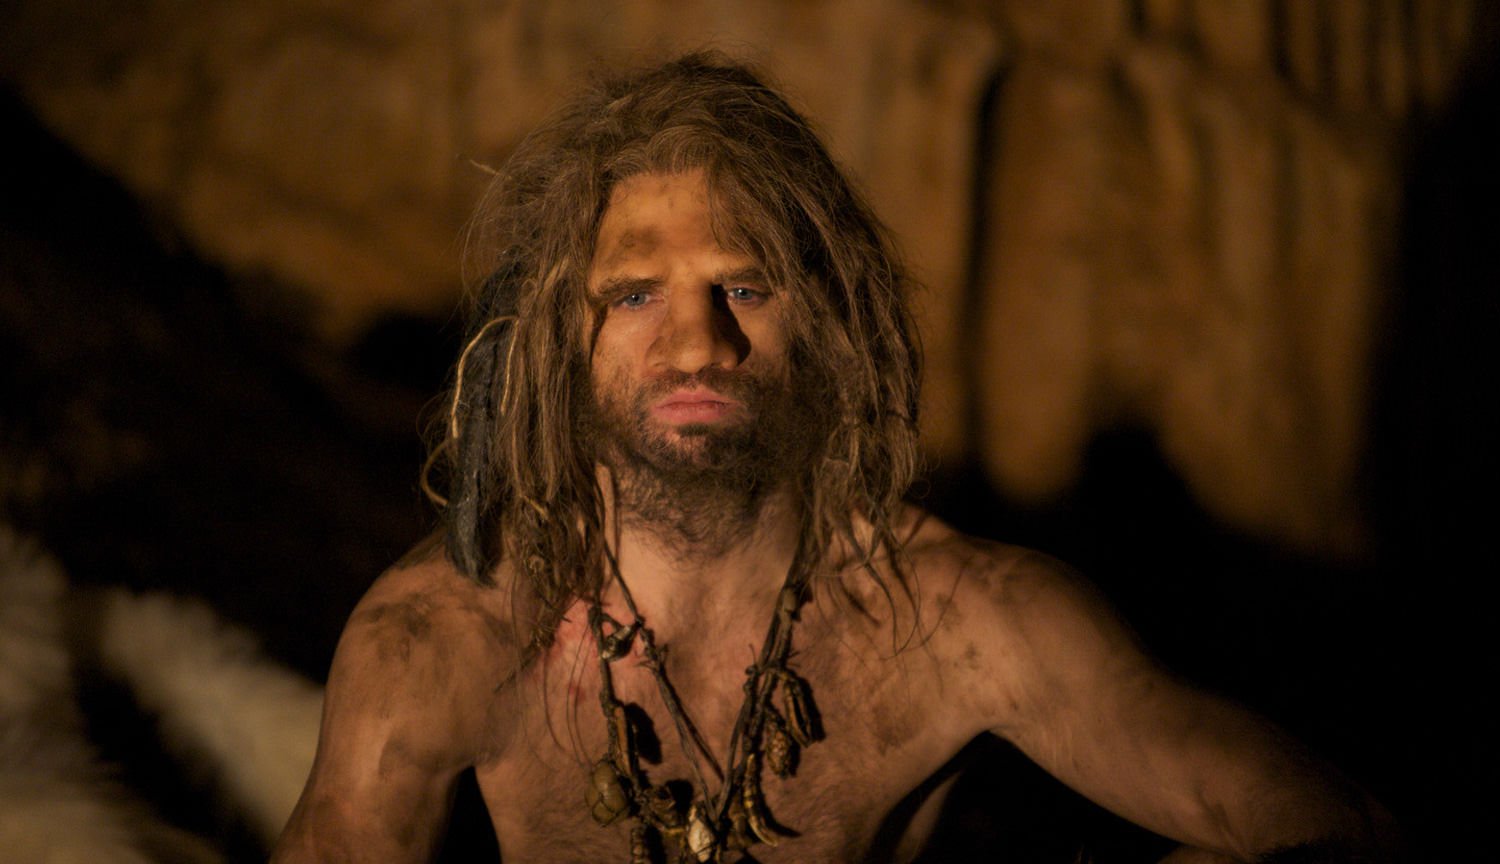 L'uomo di neanderthal vissuto l'era Glaciale grazie alla cura